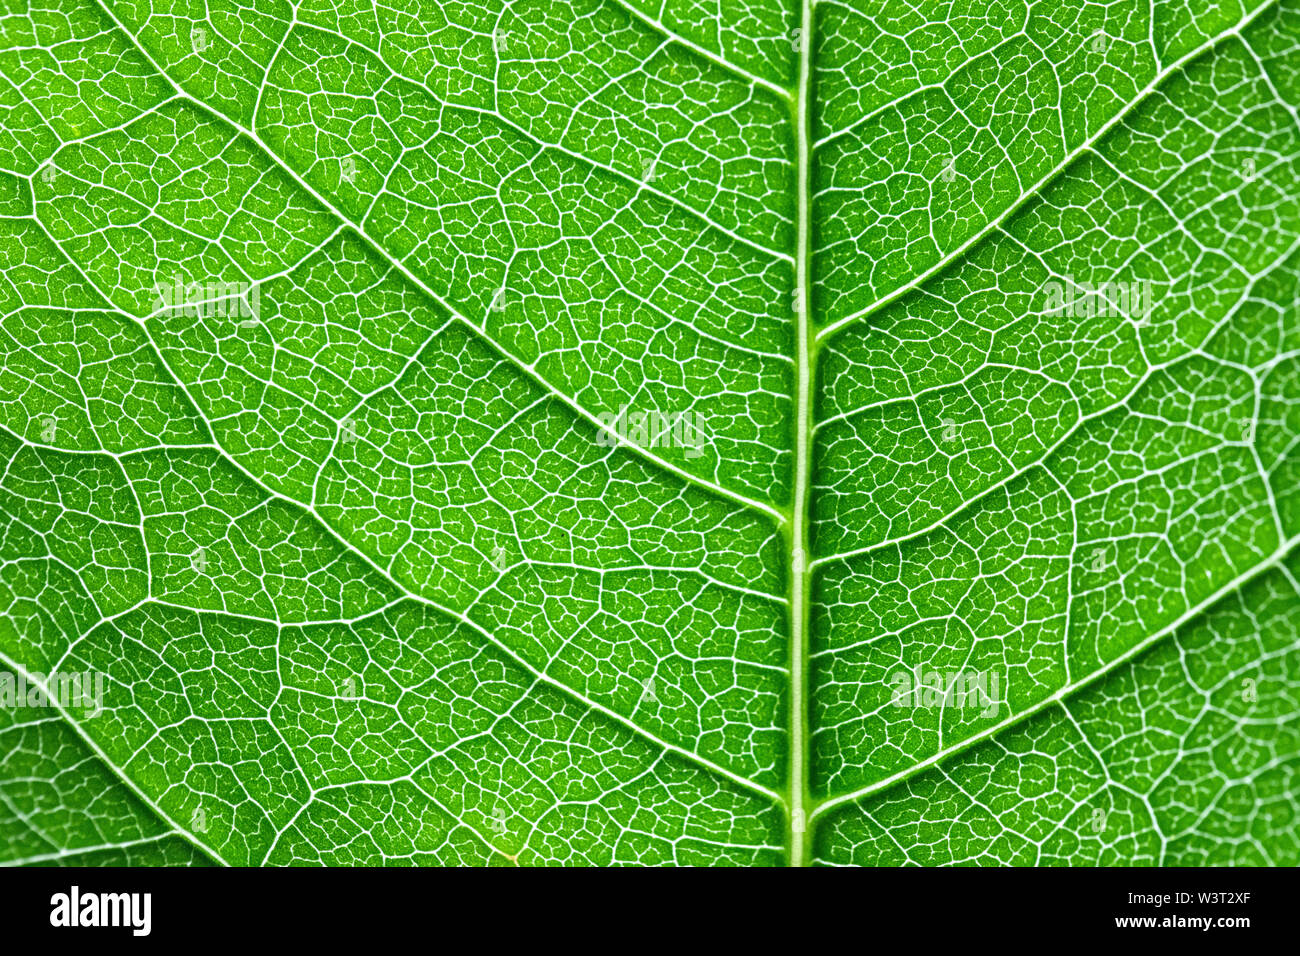 La structure des feuilles, motif, fond vert Banque D'Images